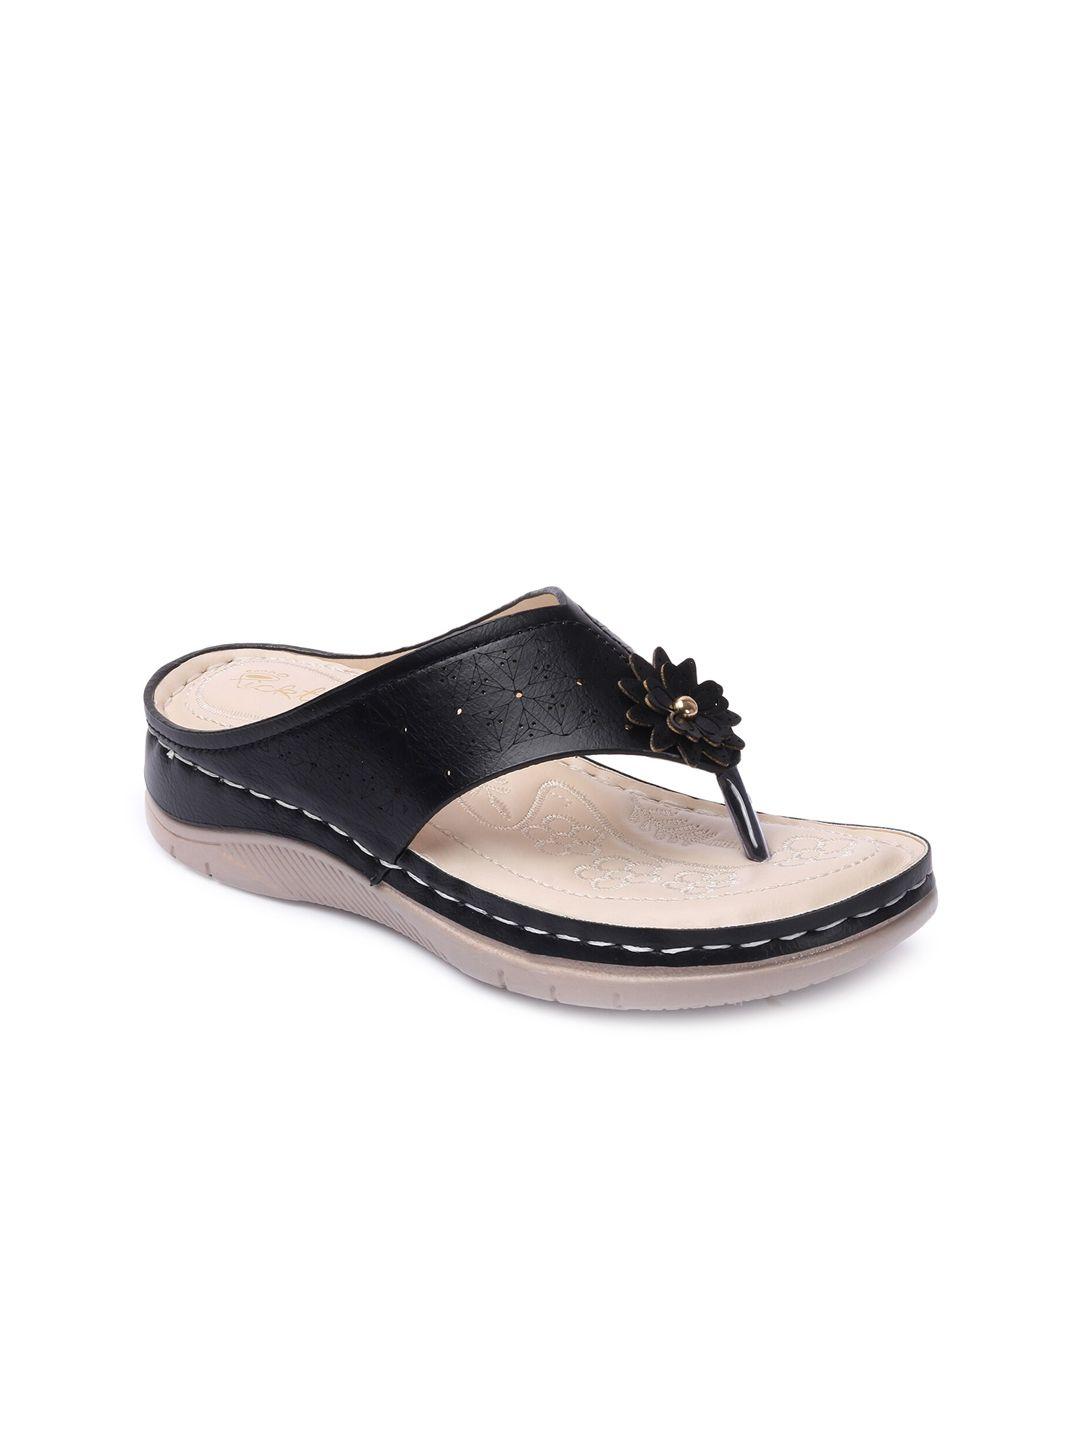 picktoes black comfort sandals